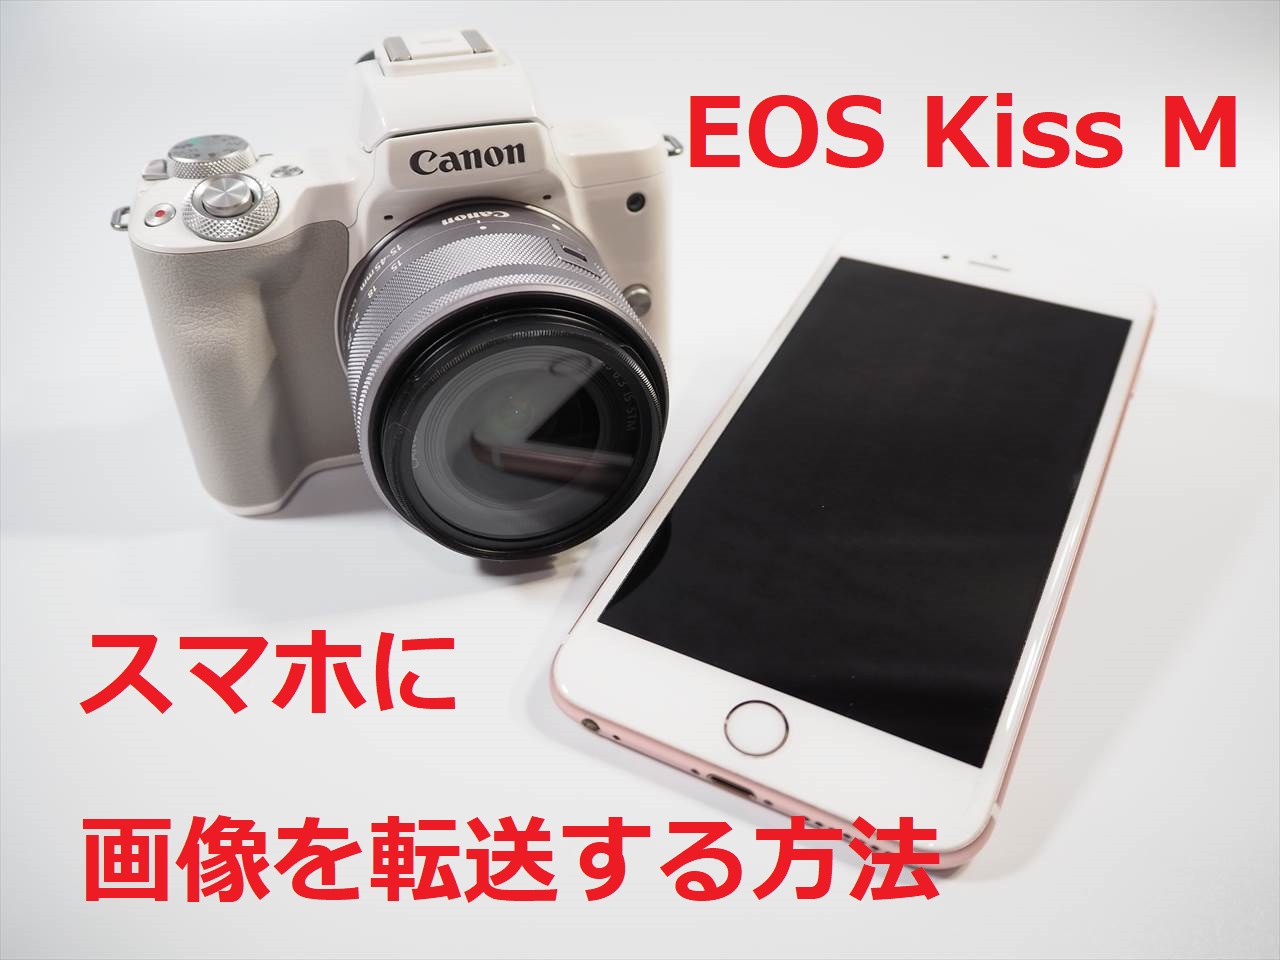 CANON EOS Kiss M で写真をスマホに転送する方法 | デジカメ.net